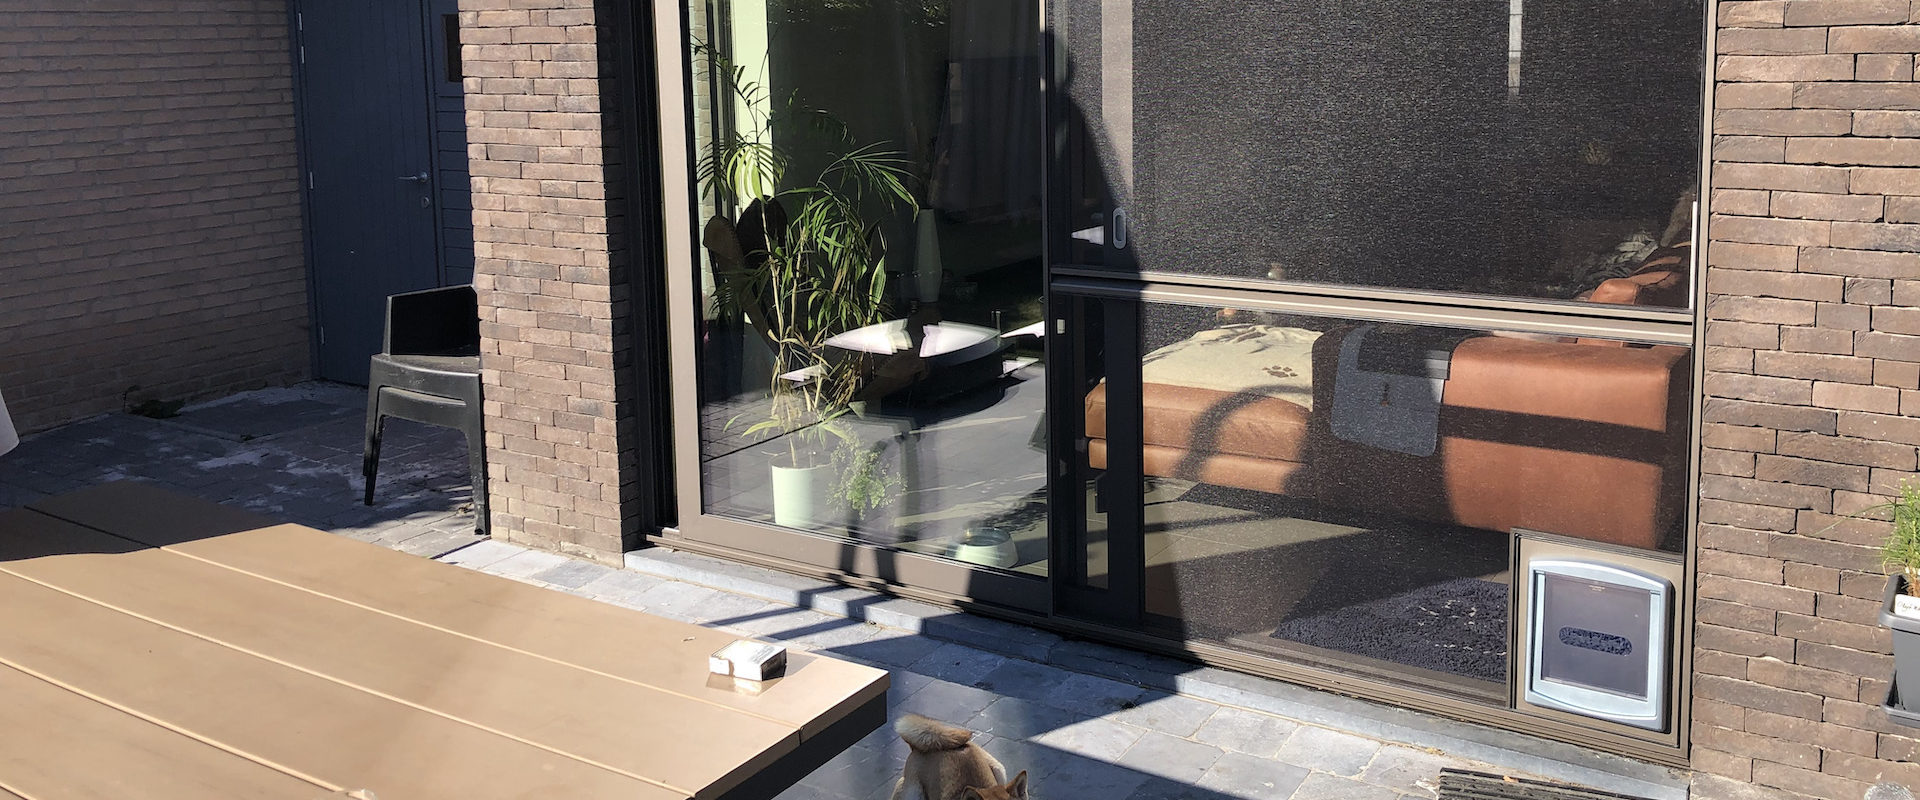 Schuifvliegendeur voor schuiframen met hondenluik in Antwerpen